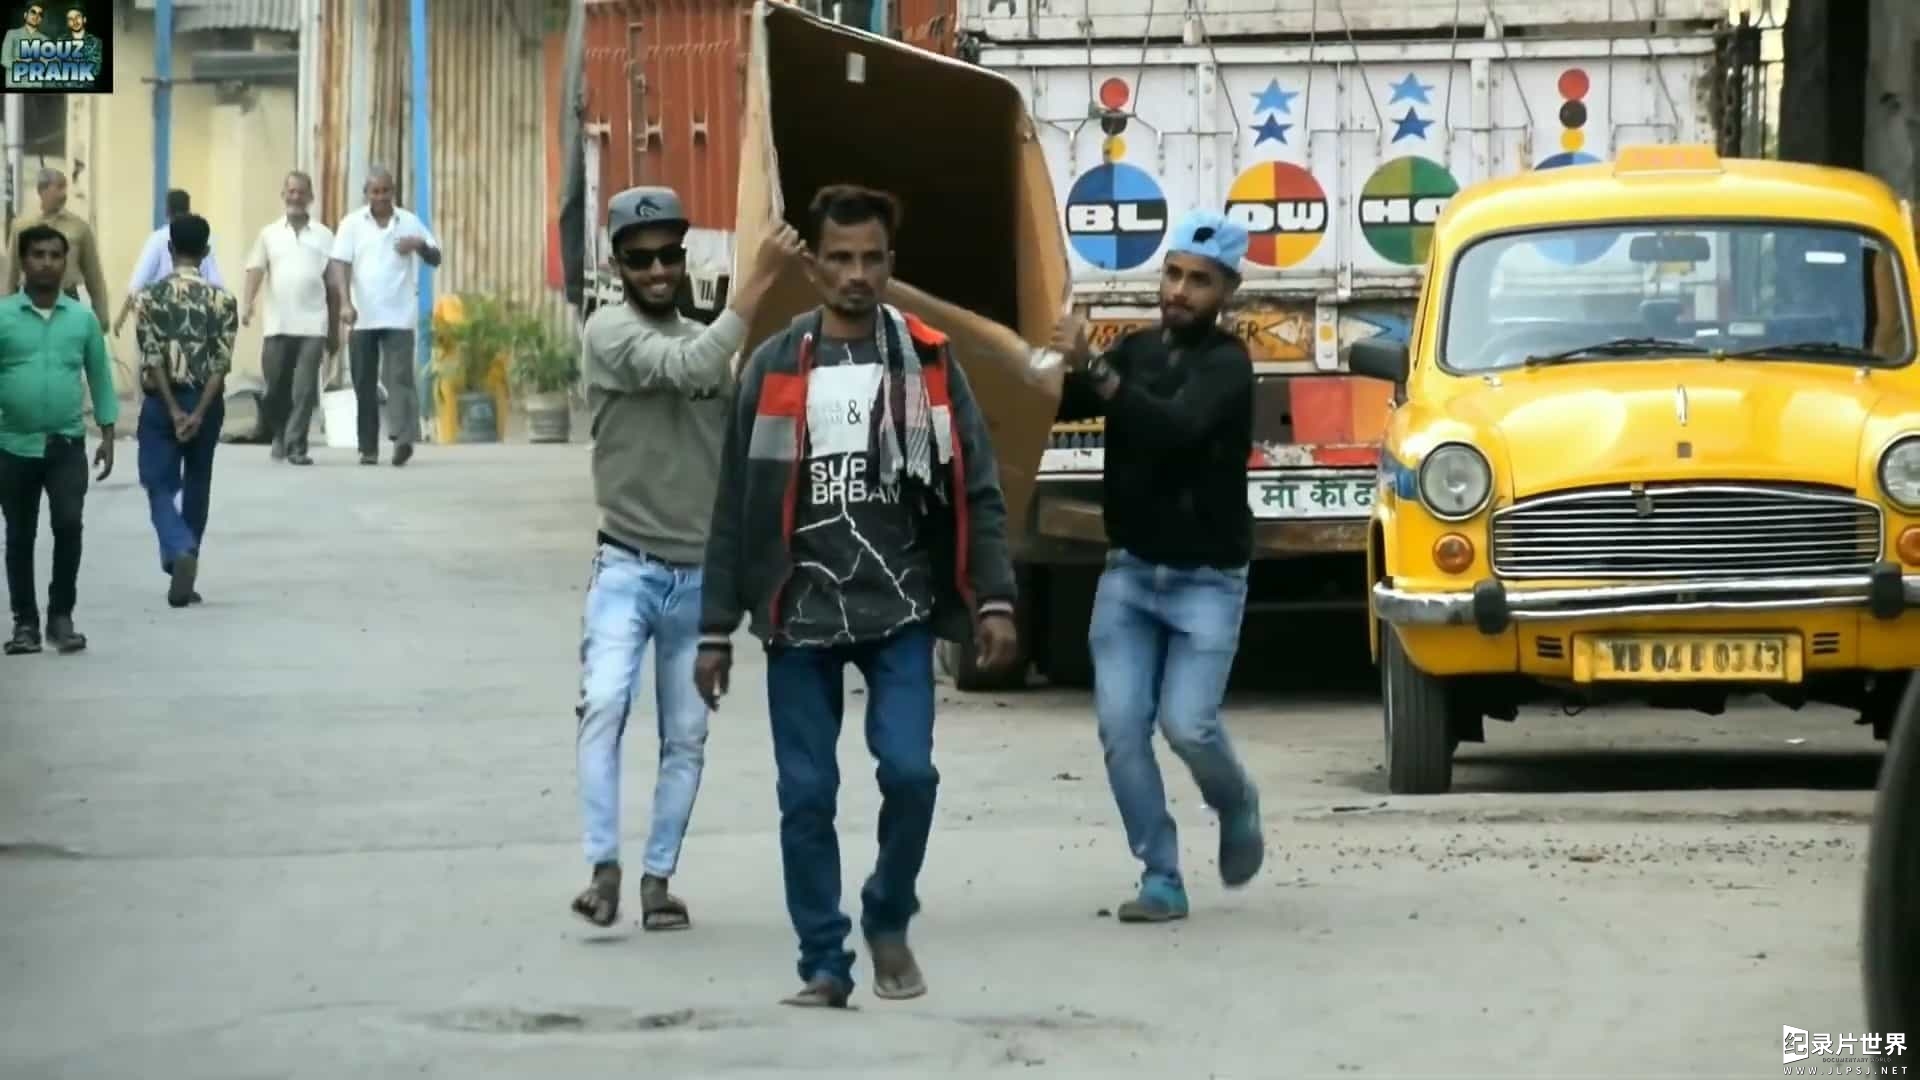 恶作剧搞笑纪录片《印度街头整蛊秀 mouz prank》全1季 92集